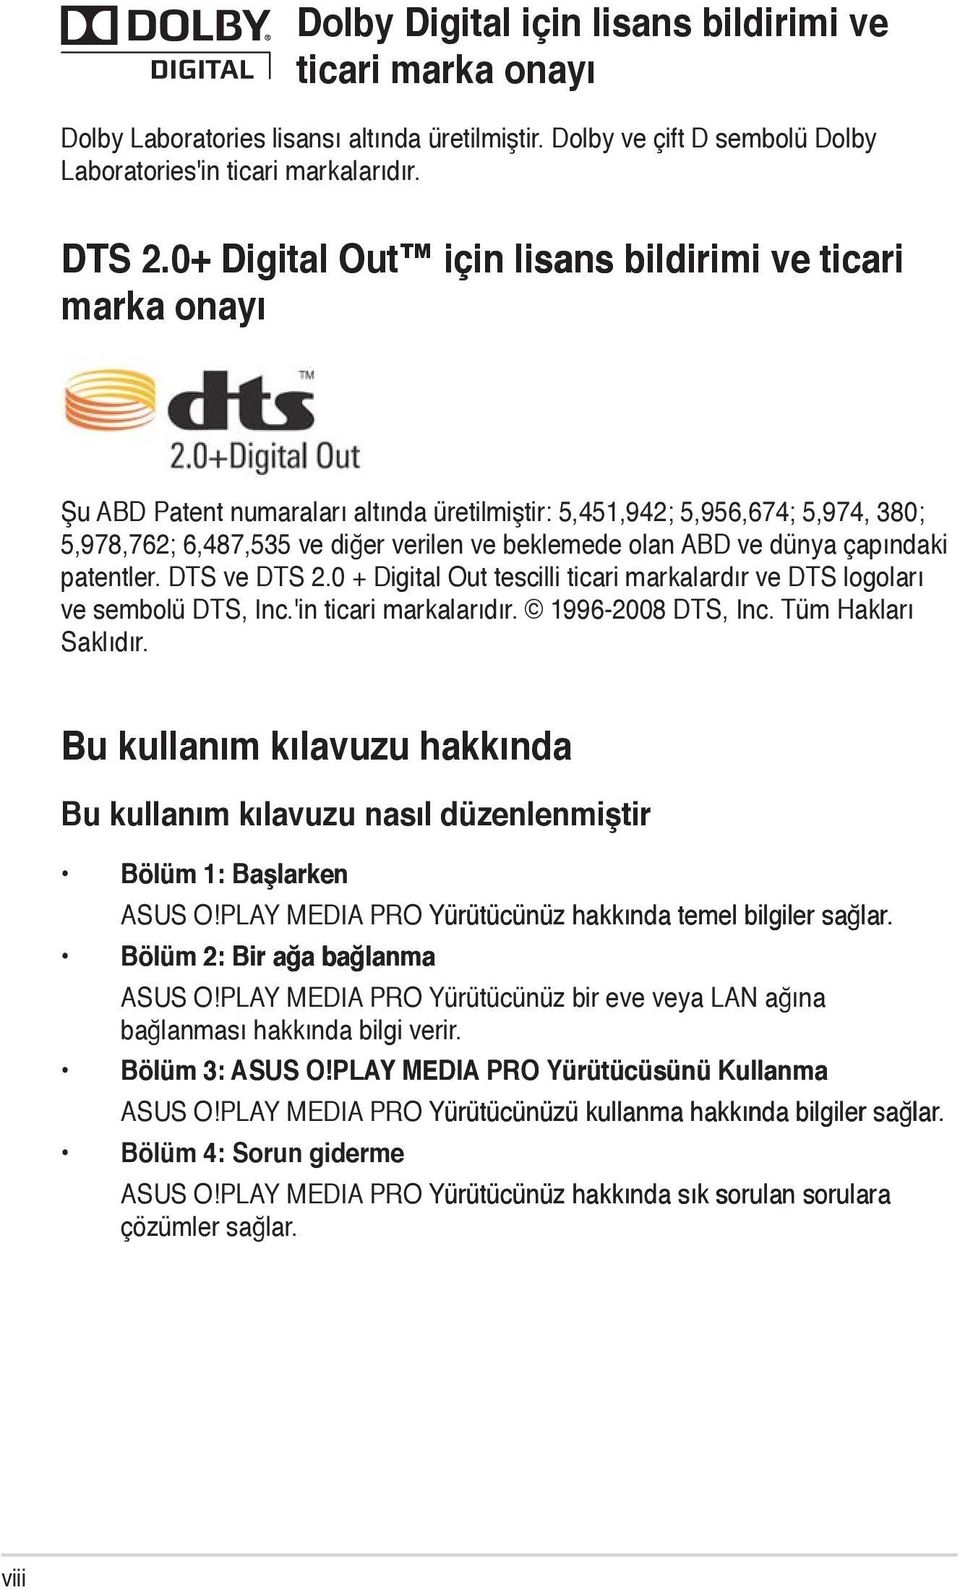 ve dünya çapındaki patentler. DTS ve DTS 2.0 + Digital Out tescilli ticari markalardır ve DTS logoları ve sembolü DTS, Inc.'in ticari markalarıdır. 1996-2008 DTS, Inc. Tüm Hakları Saklıdır.